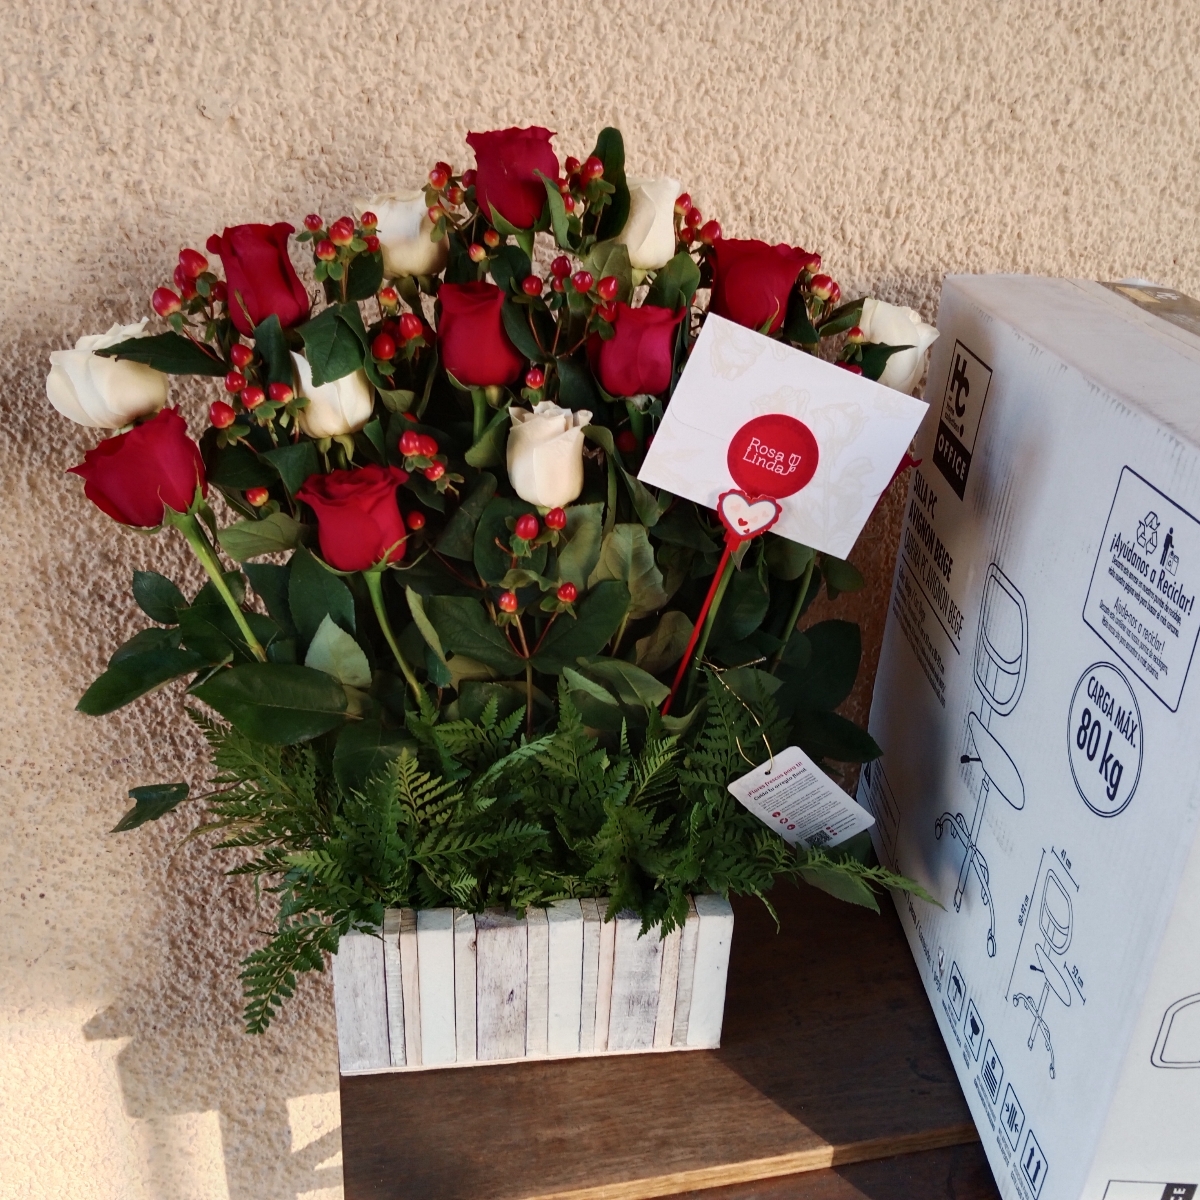 Jardín de Rosas Mix Blanco/Rojo - Arreglo floral con 16 rosas rojas y blancas e hypericum rojo - Pedido 256618